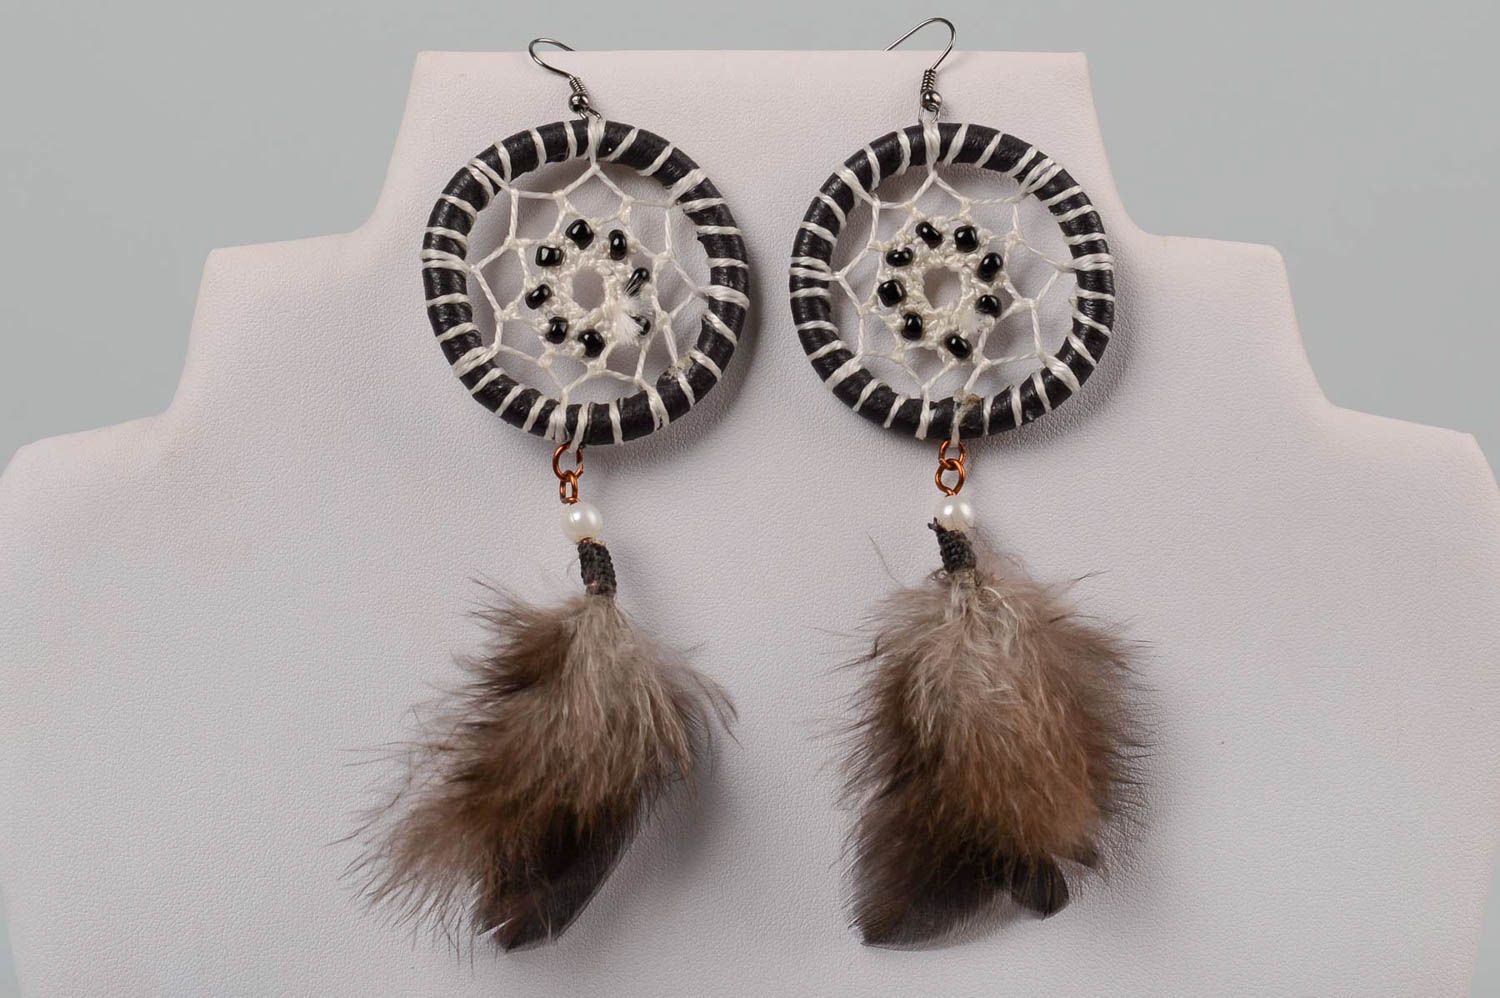 Handmade jewellery dreamcatcher earrings cute earrings fashion accessories photo 4